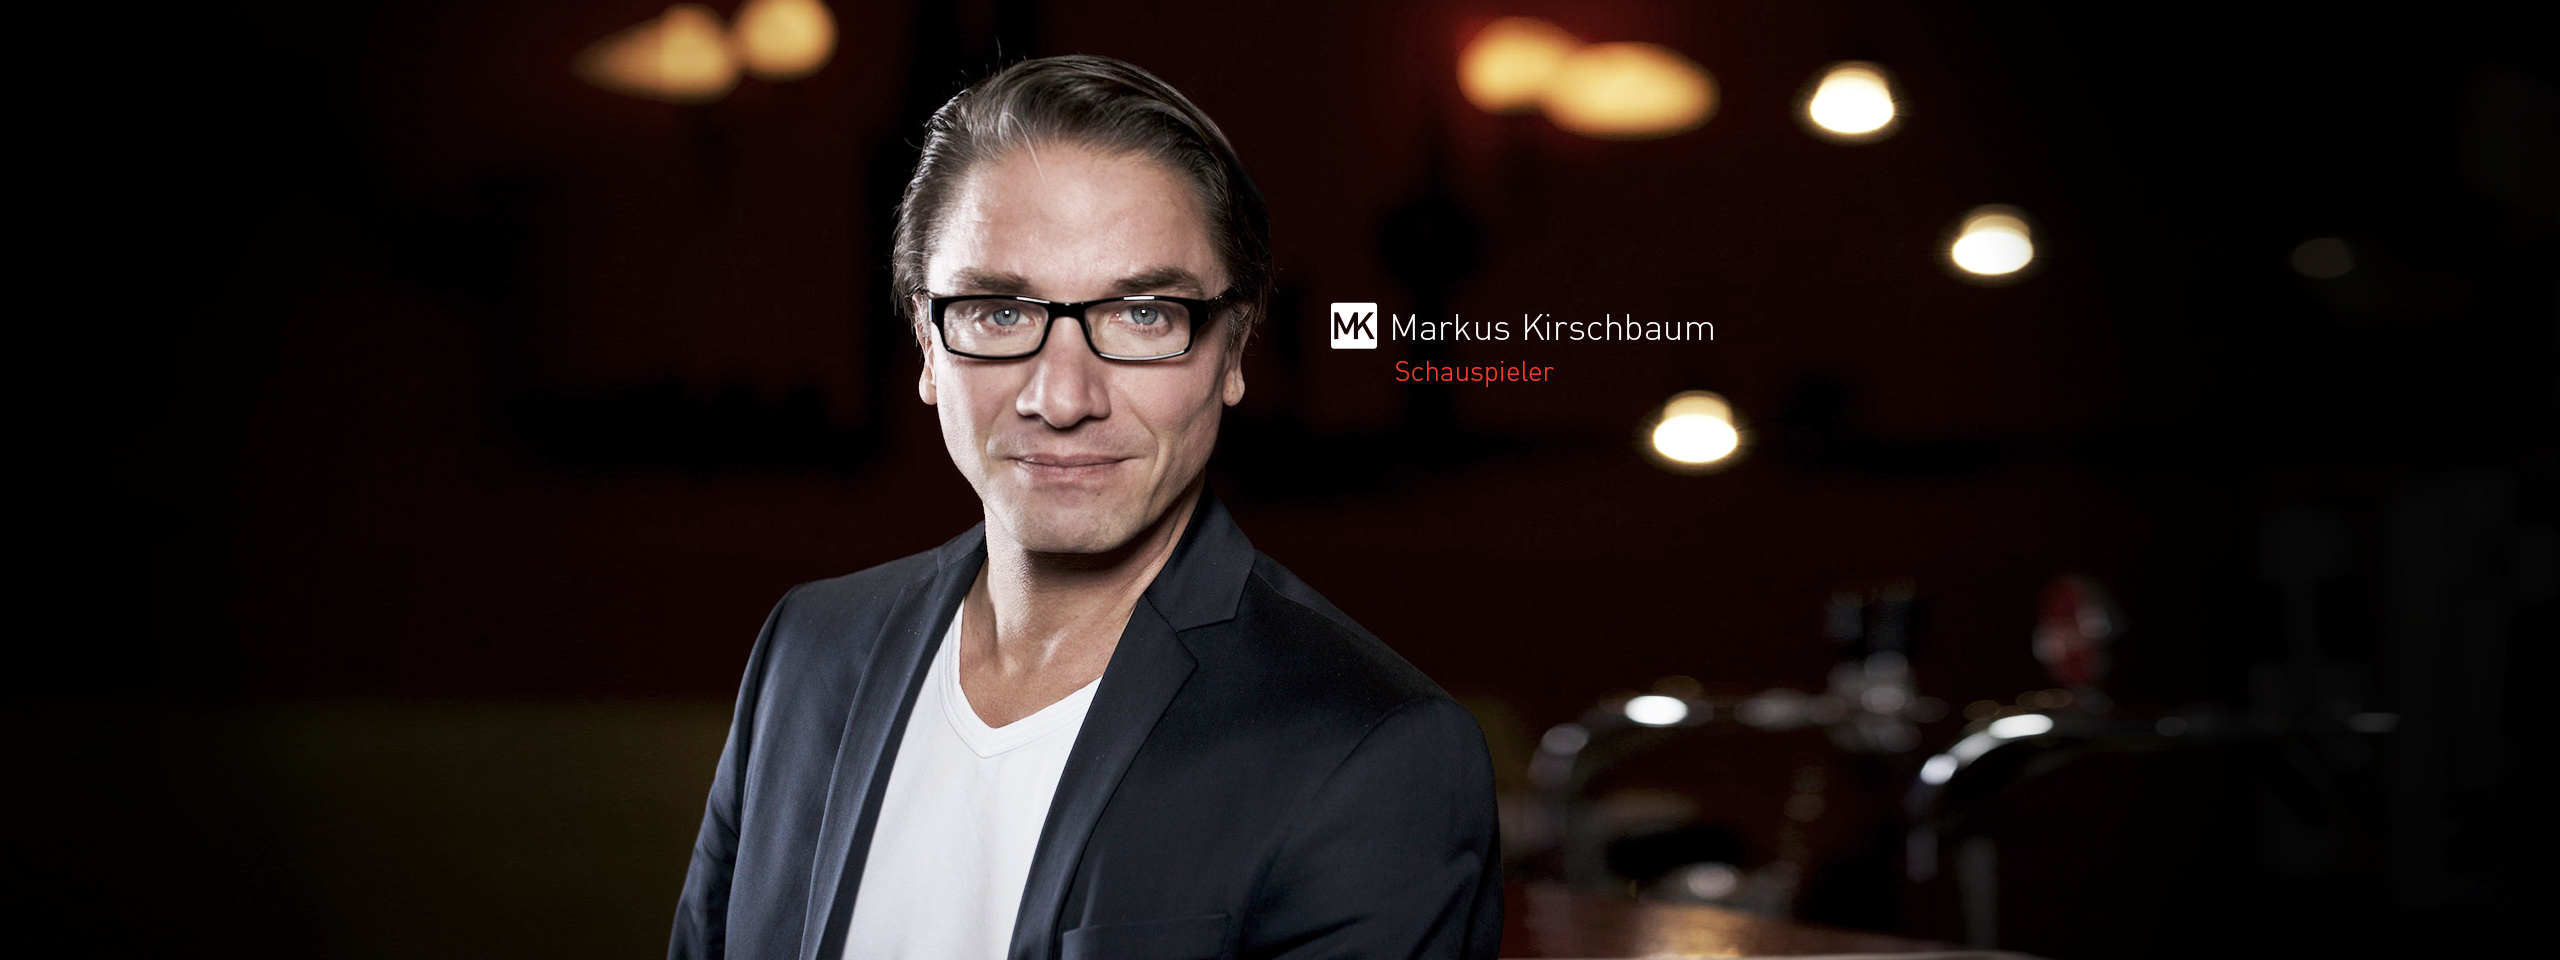 Markus Kirschbaum